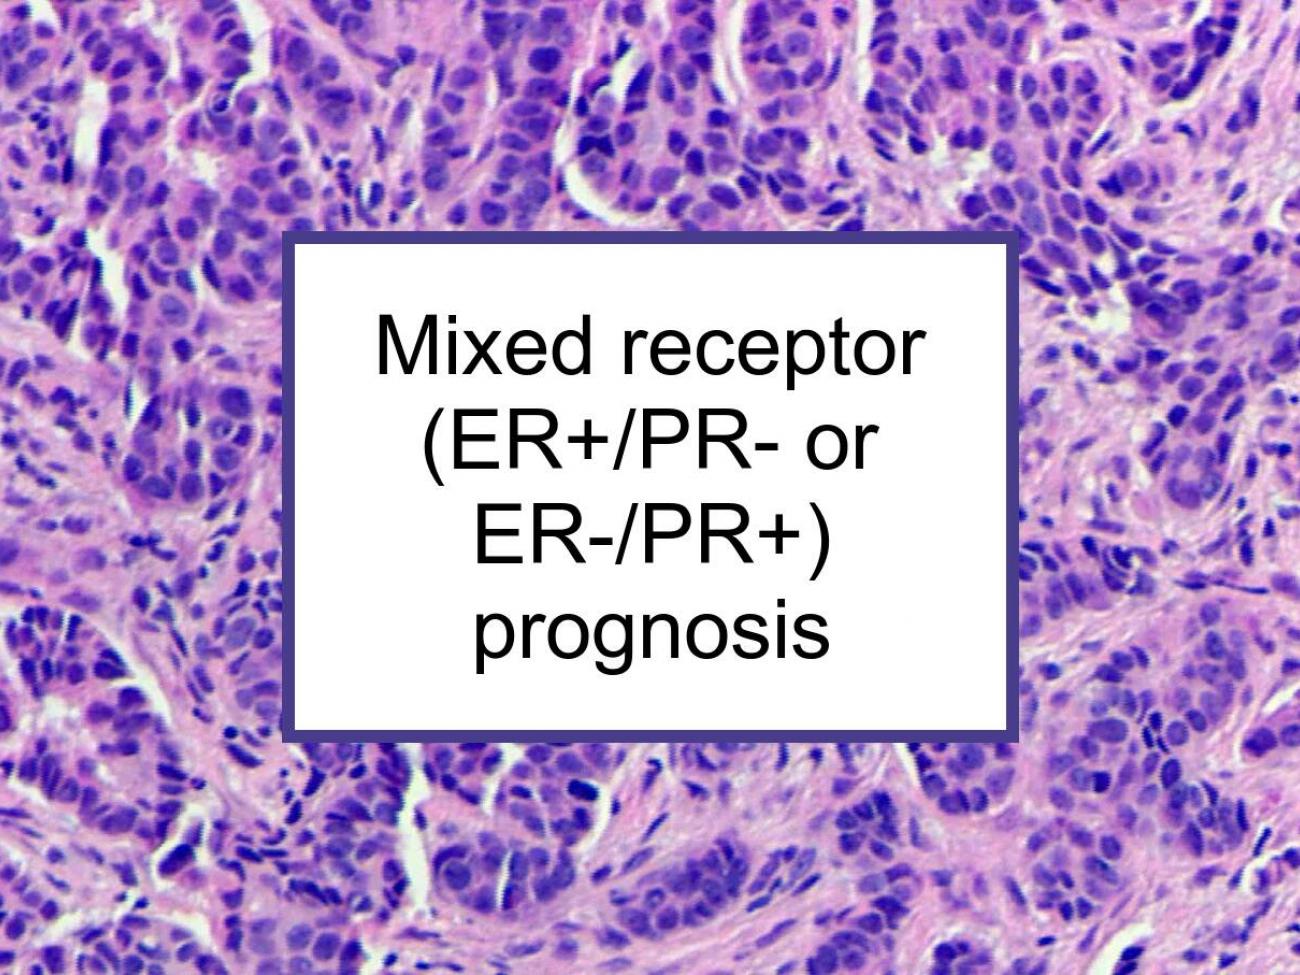 Mixed Hormone Receptor (ER+/PR- Or ER-/PR+) Breast Cancer